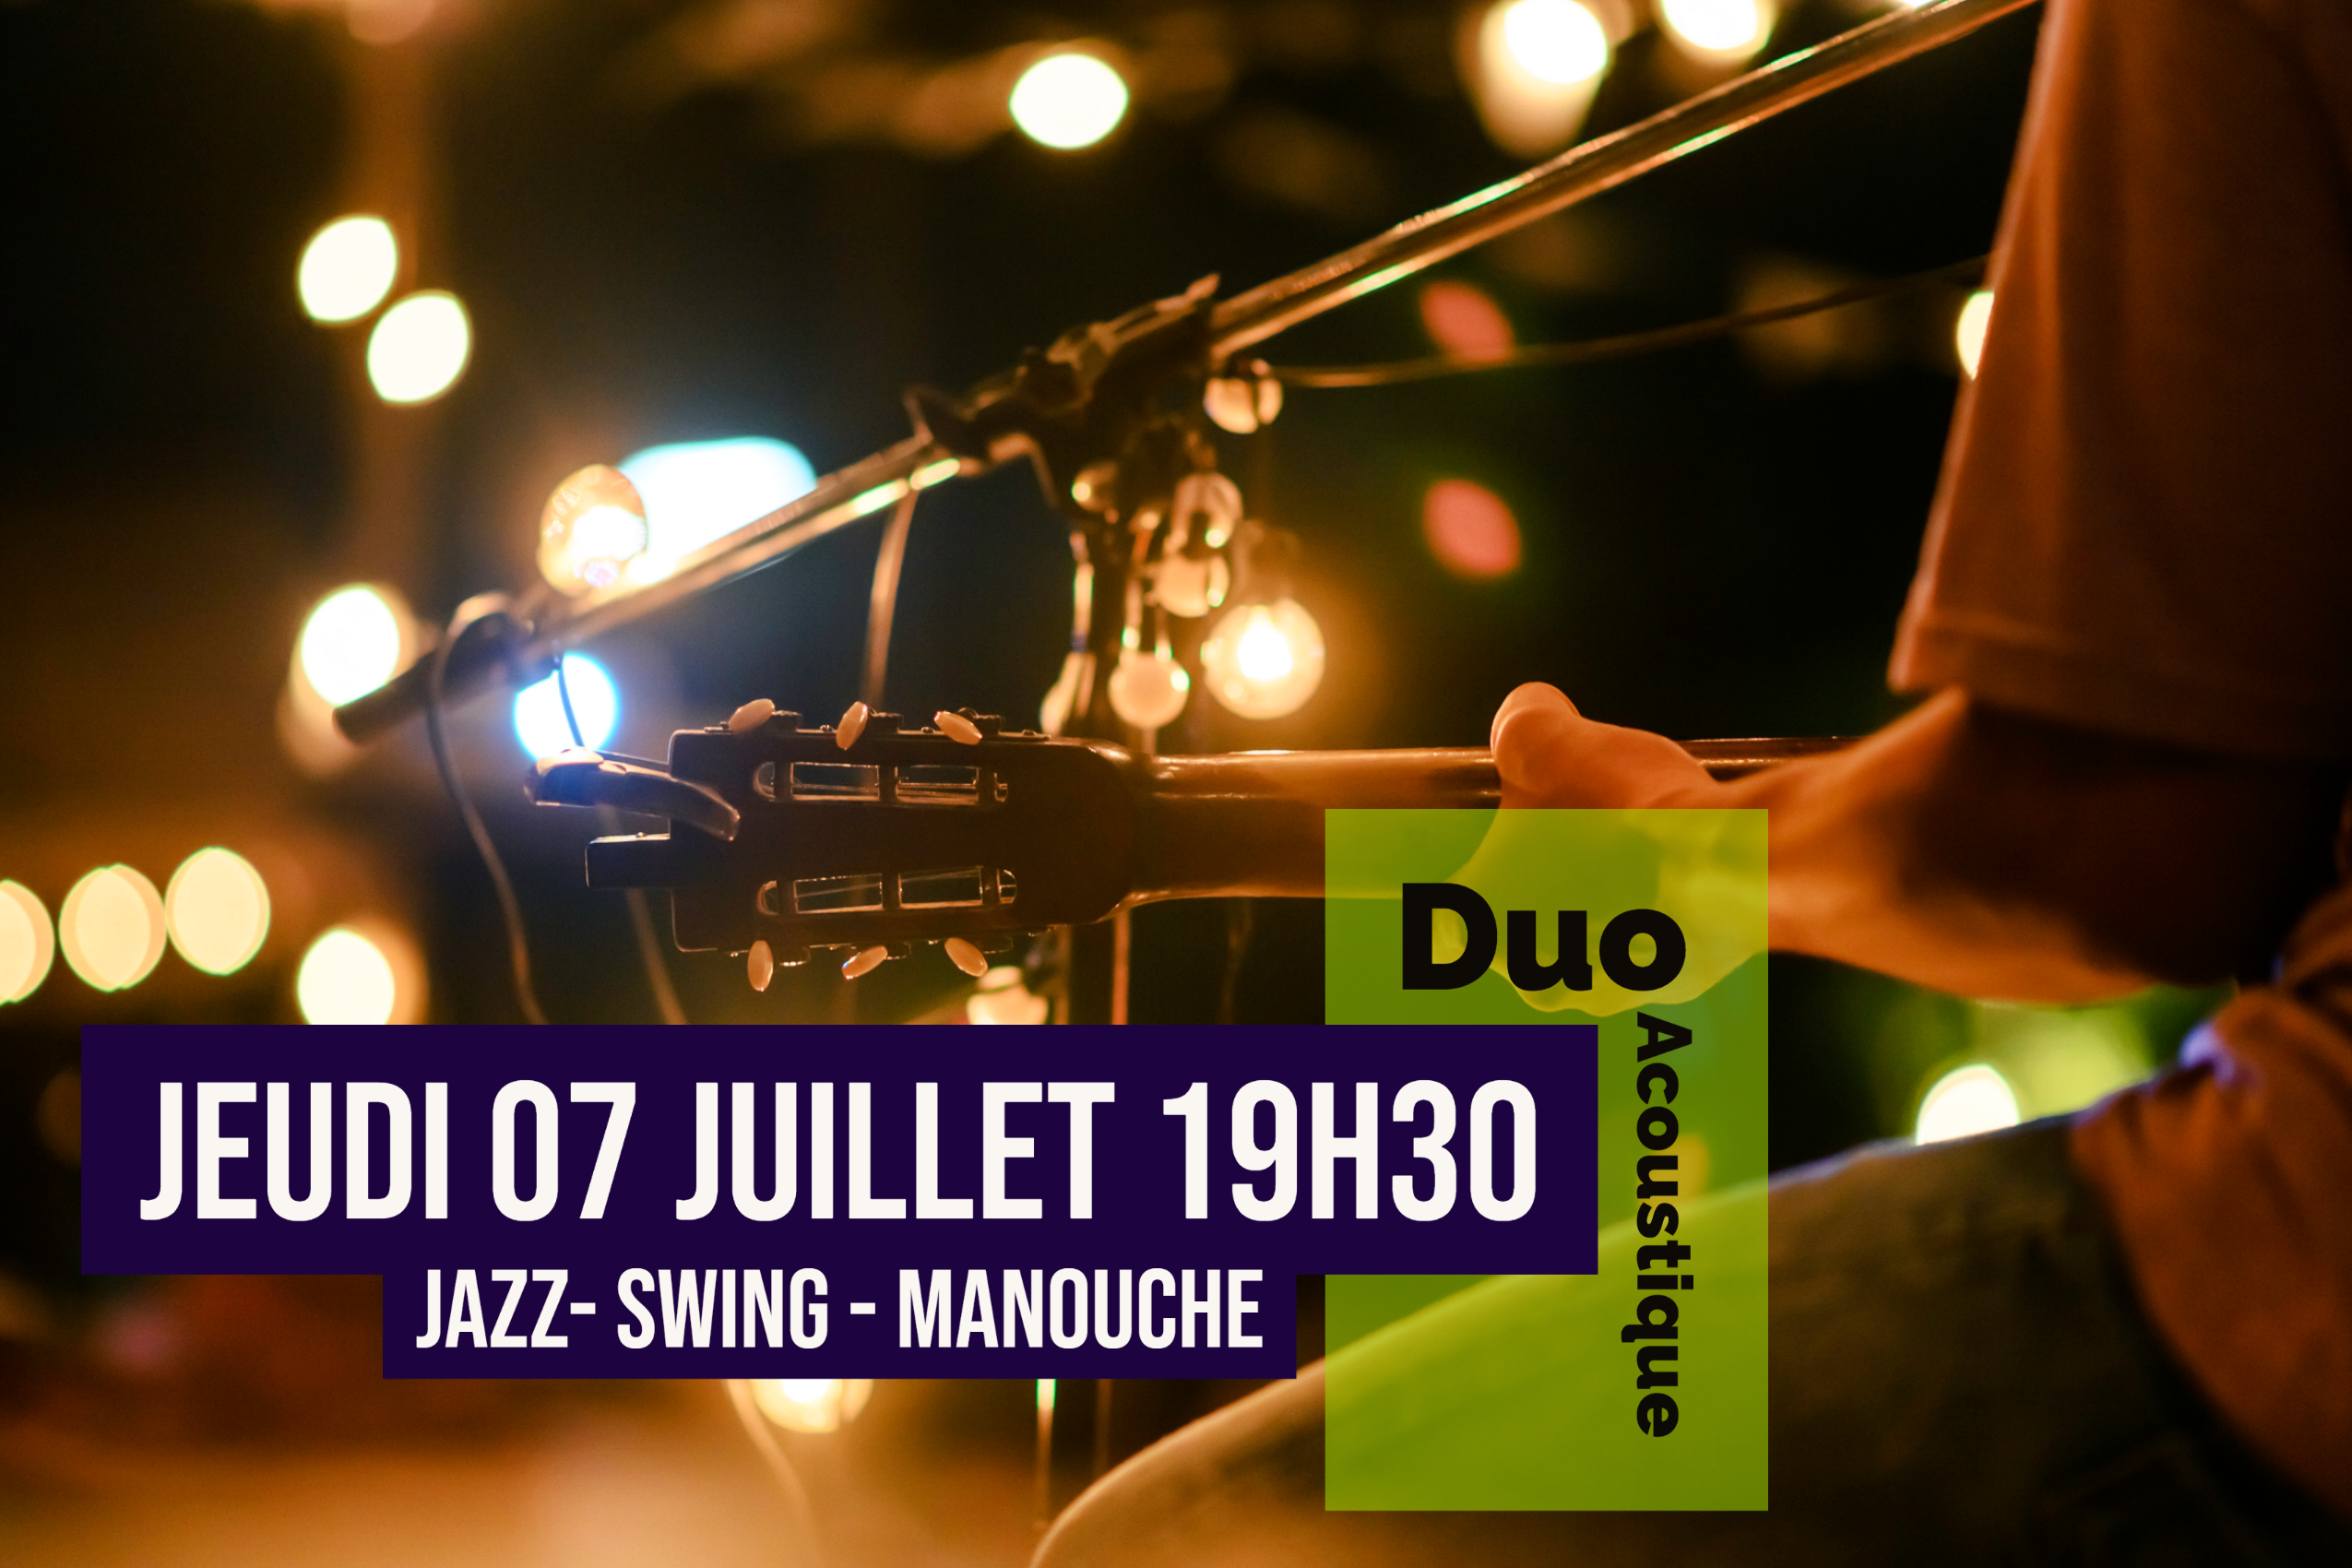 Duo Jazz Manouche